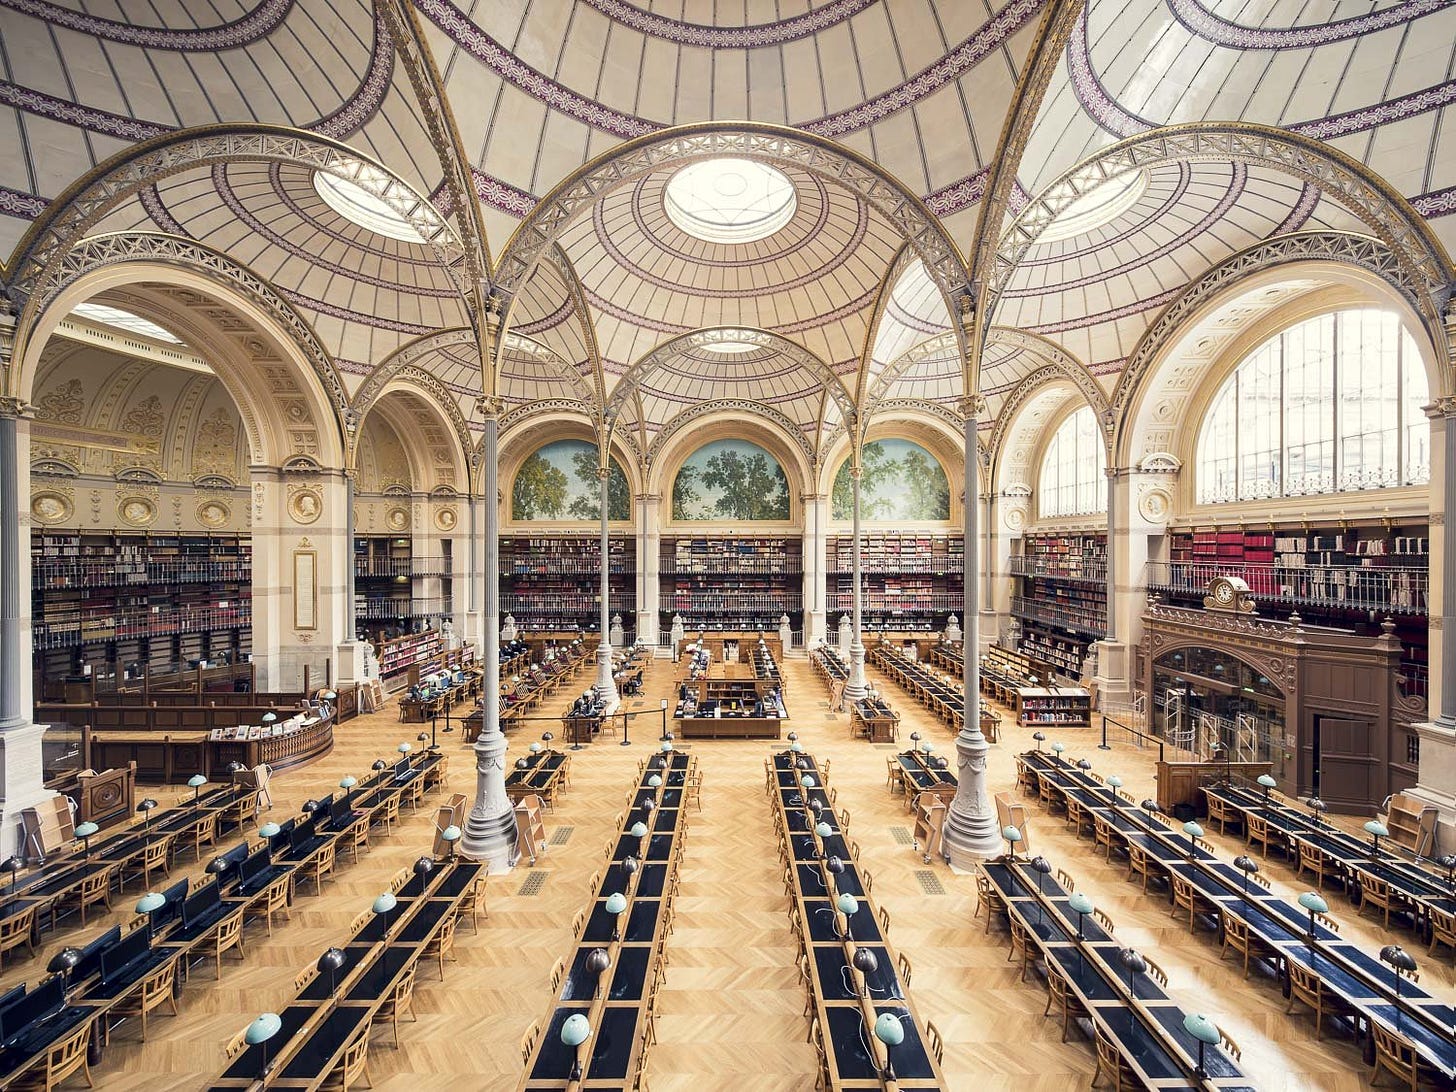 Bibliothèque Nationale de France - Album on Imgur